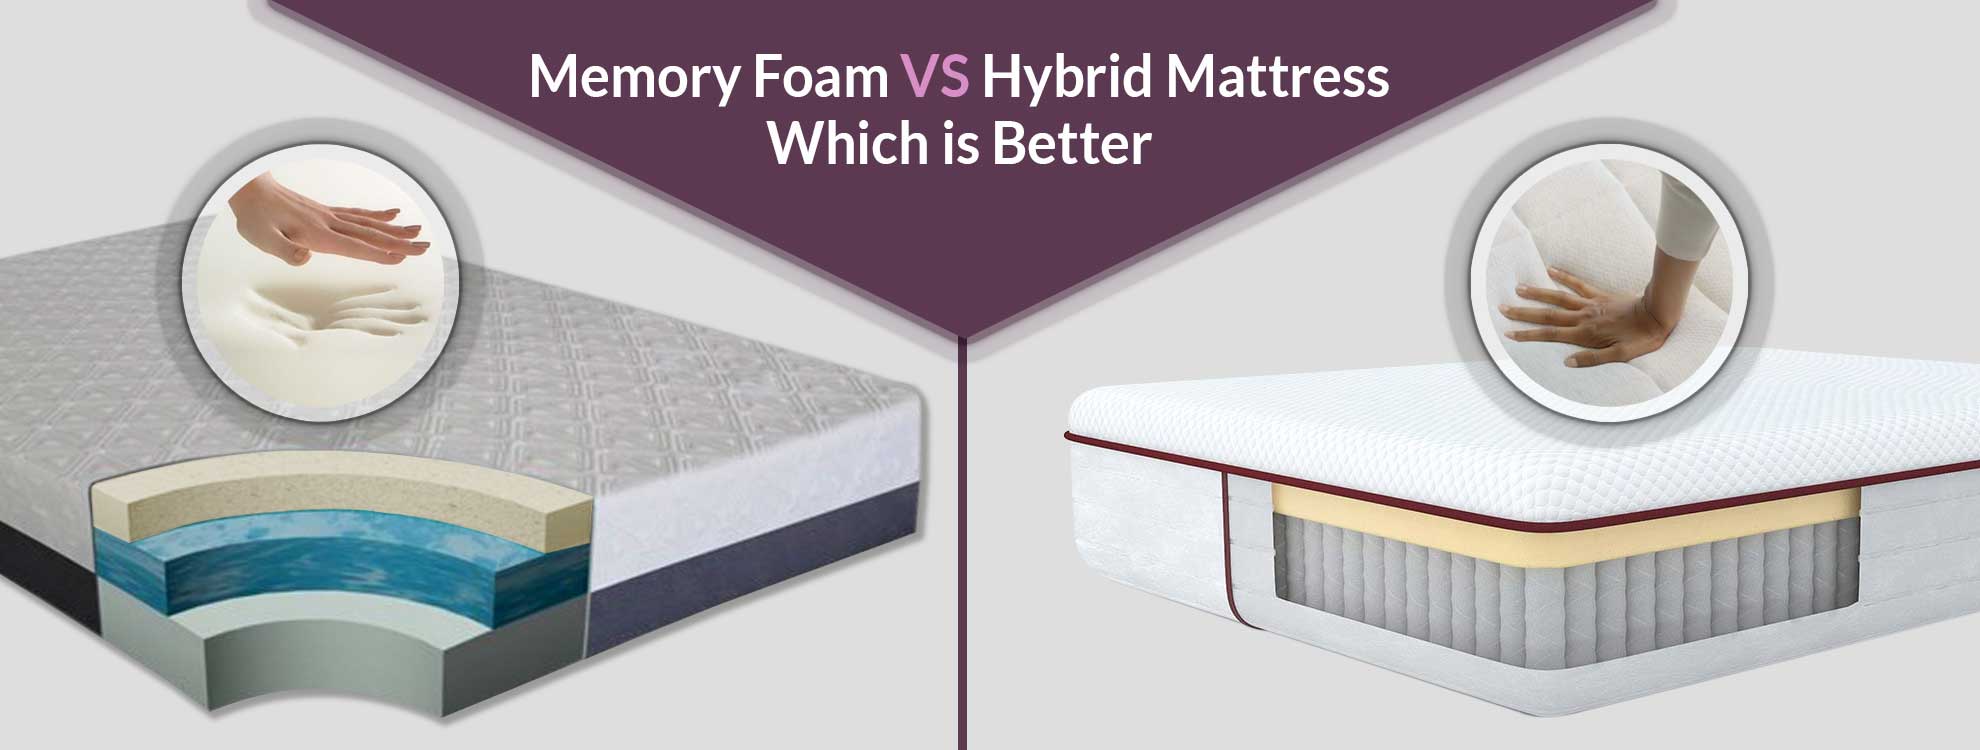 hybrid memory foam koolgel mattress review